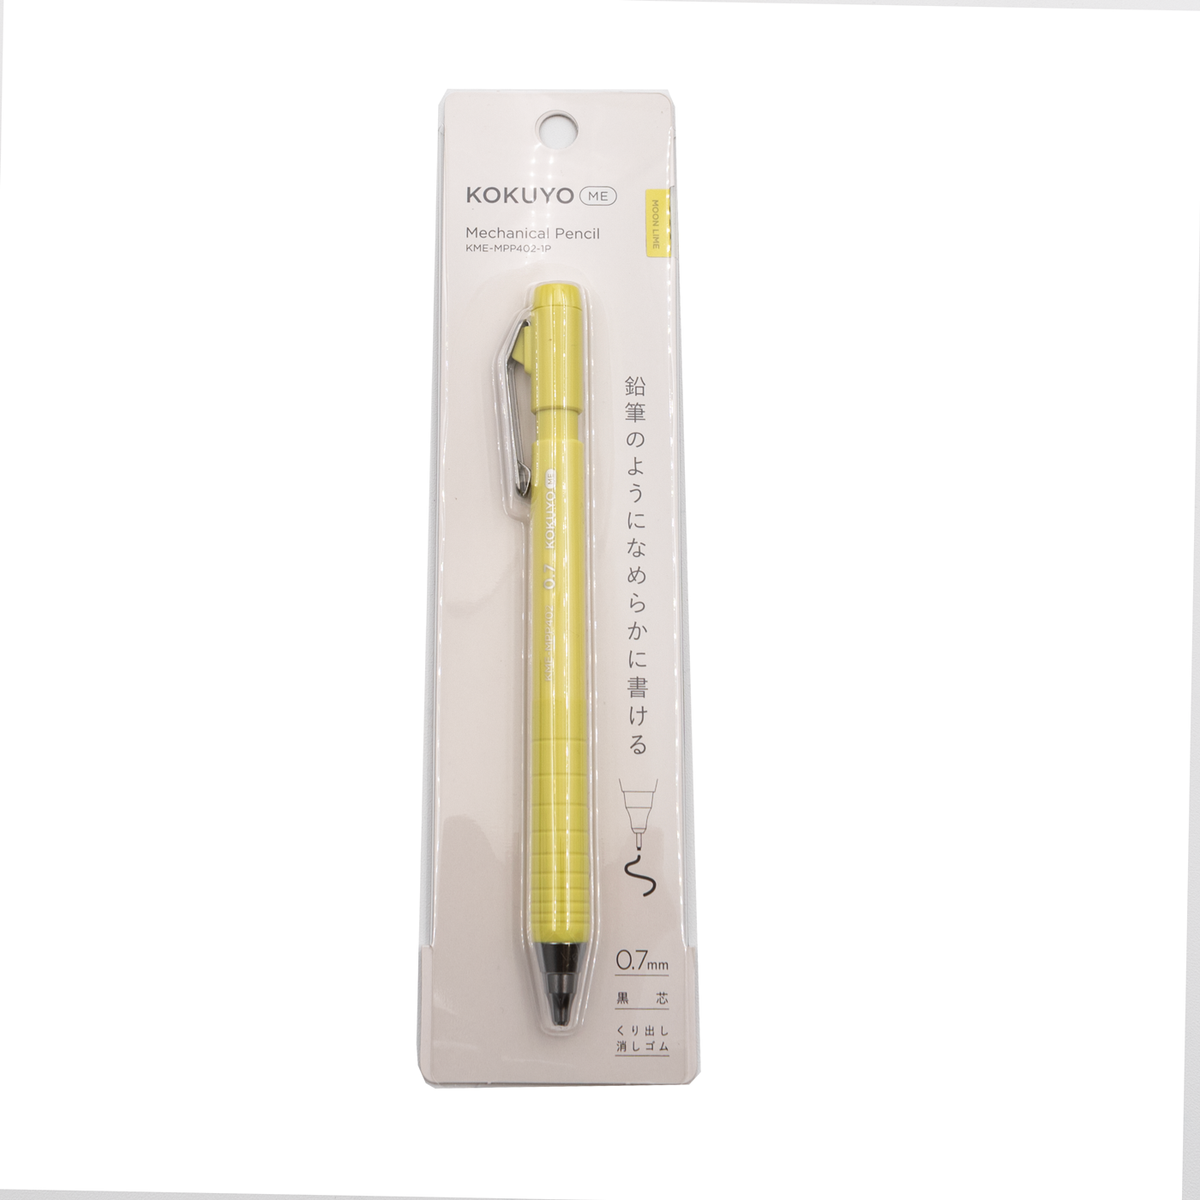 Pentel Sharp Mechanical Pencil by Delfonics - 0.3mm light gray